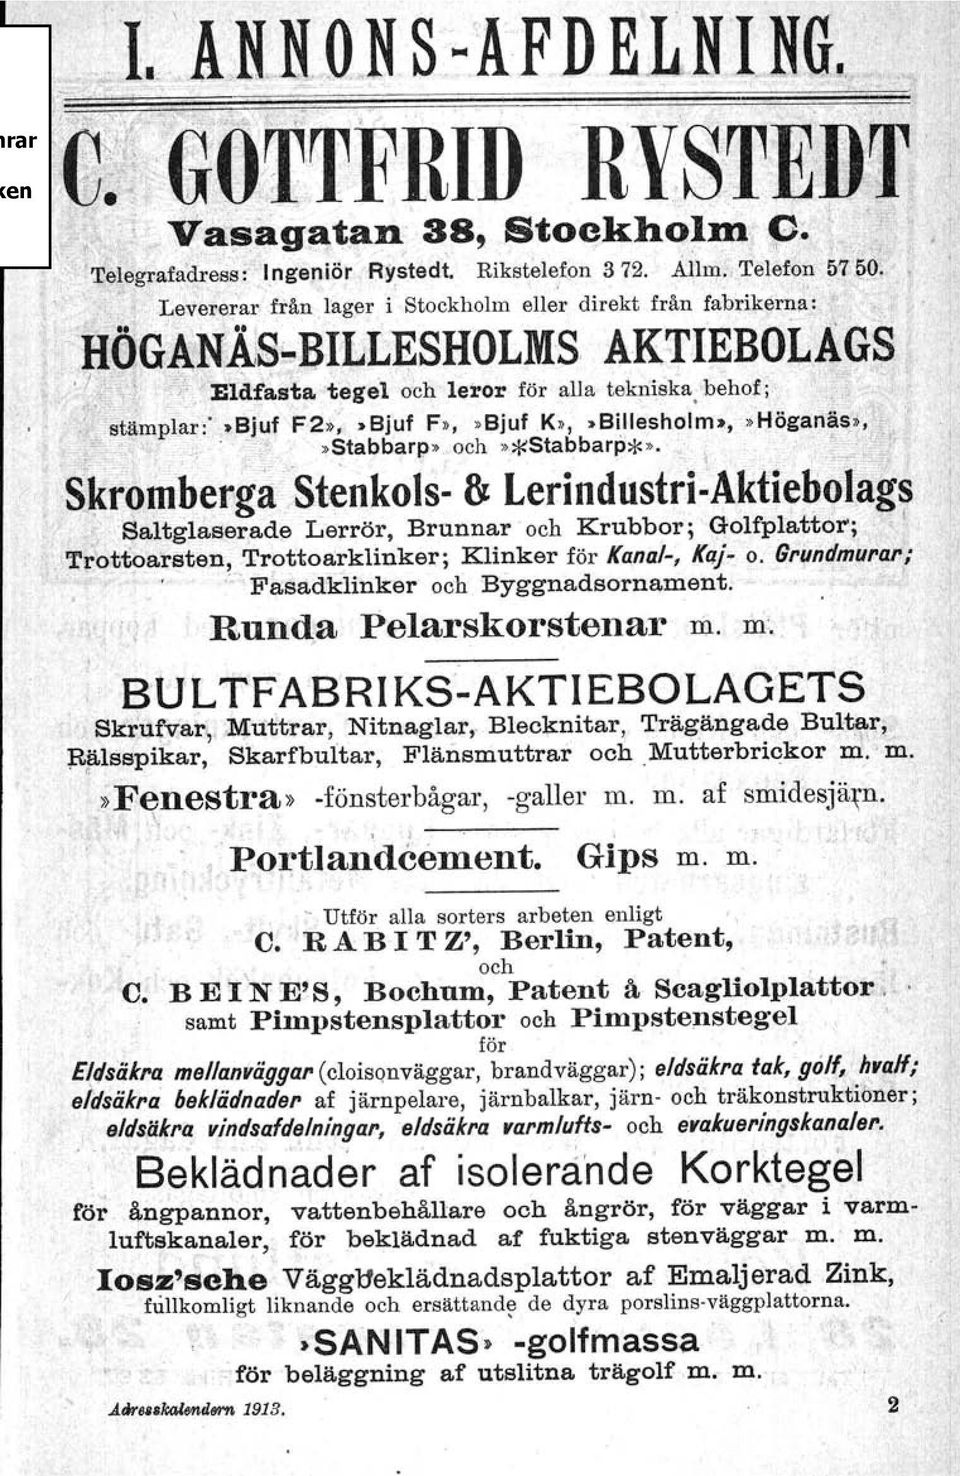 ; Levererar från lager i Stockholm eller direkt från fabrikerna: '.'" f HÖGA:Nis~BrLLESHOLMS AKTIEBOLAGS r i '.'</,1,1<Eldt~~ta.t,egel dch leror för aua tekniska-behof ; 'J' "et r'i. stämplar:'.